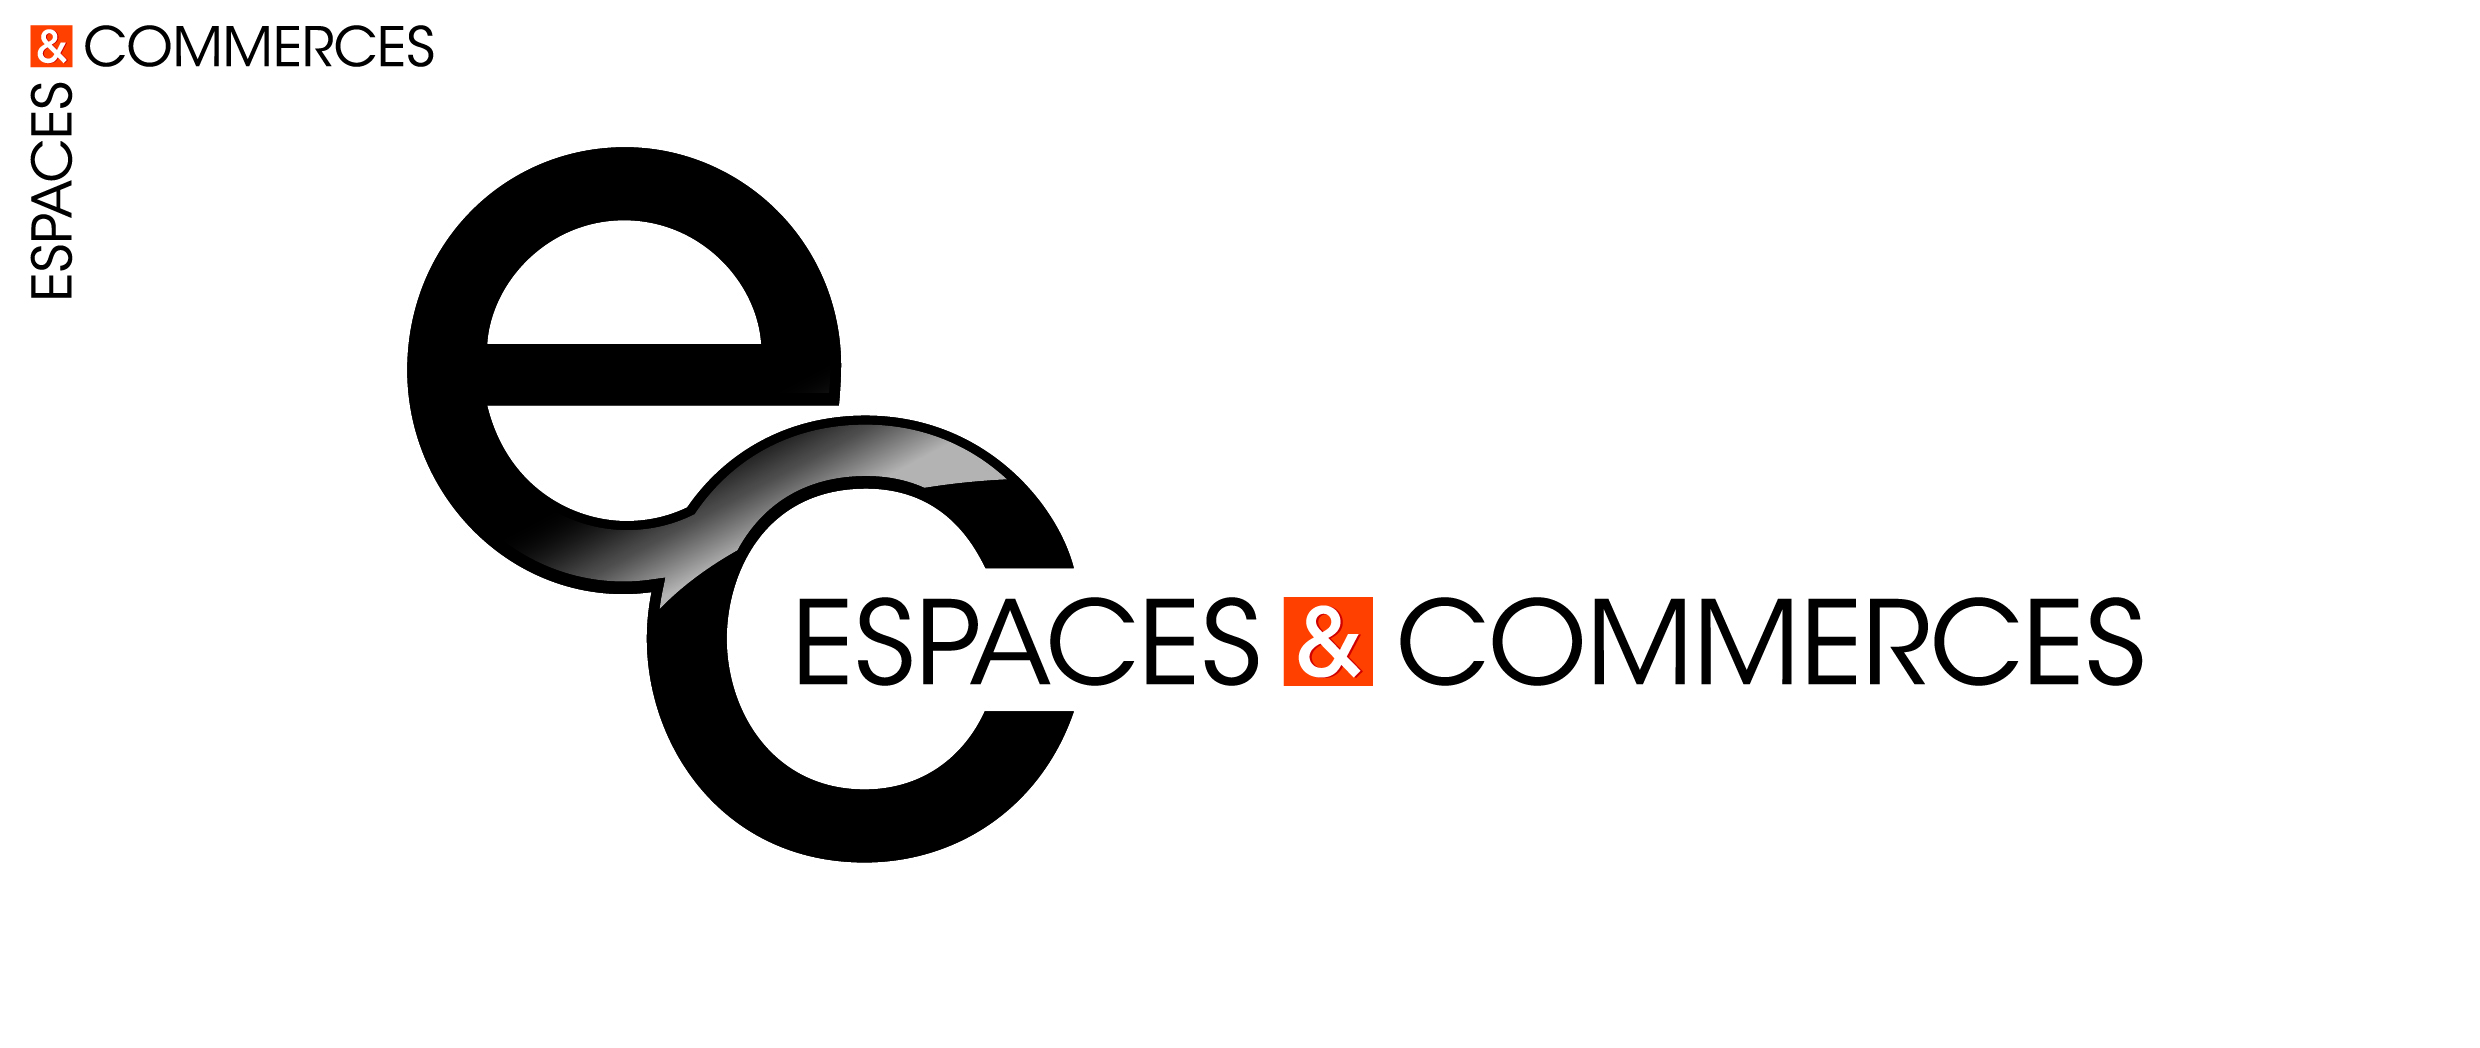 Espace & commerces